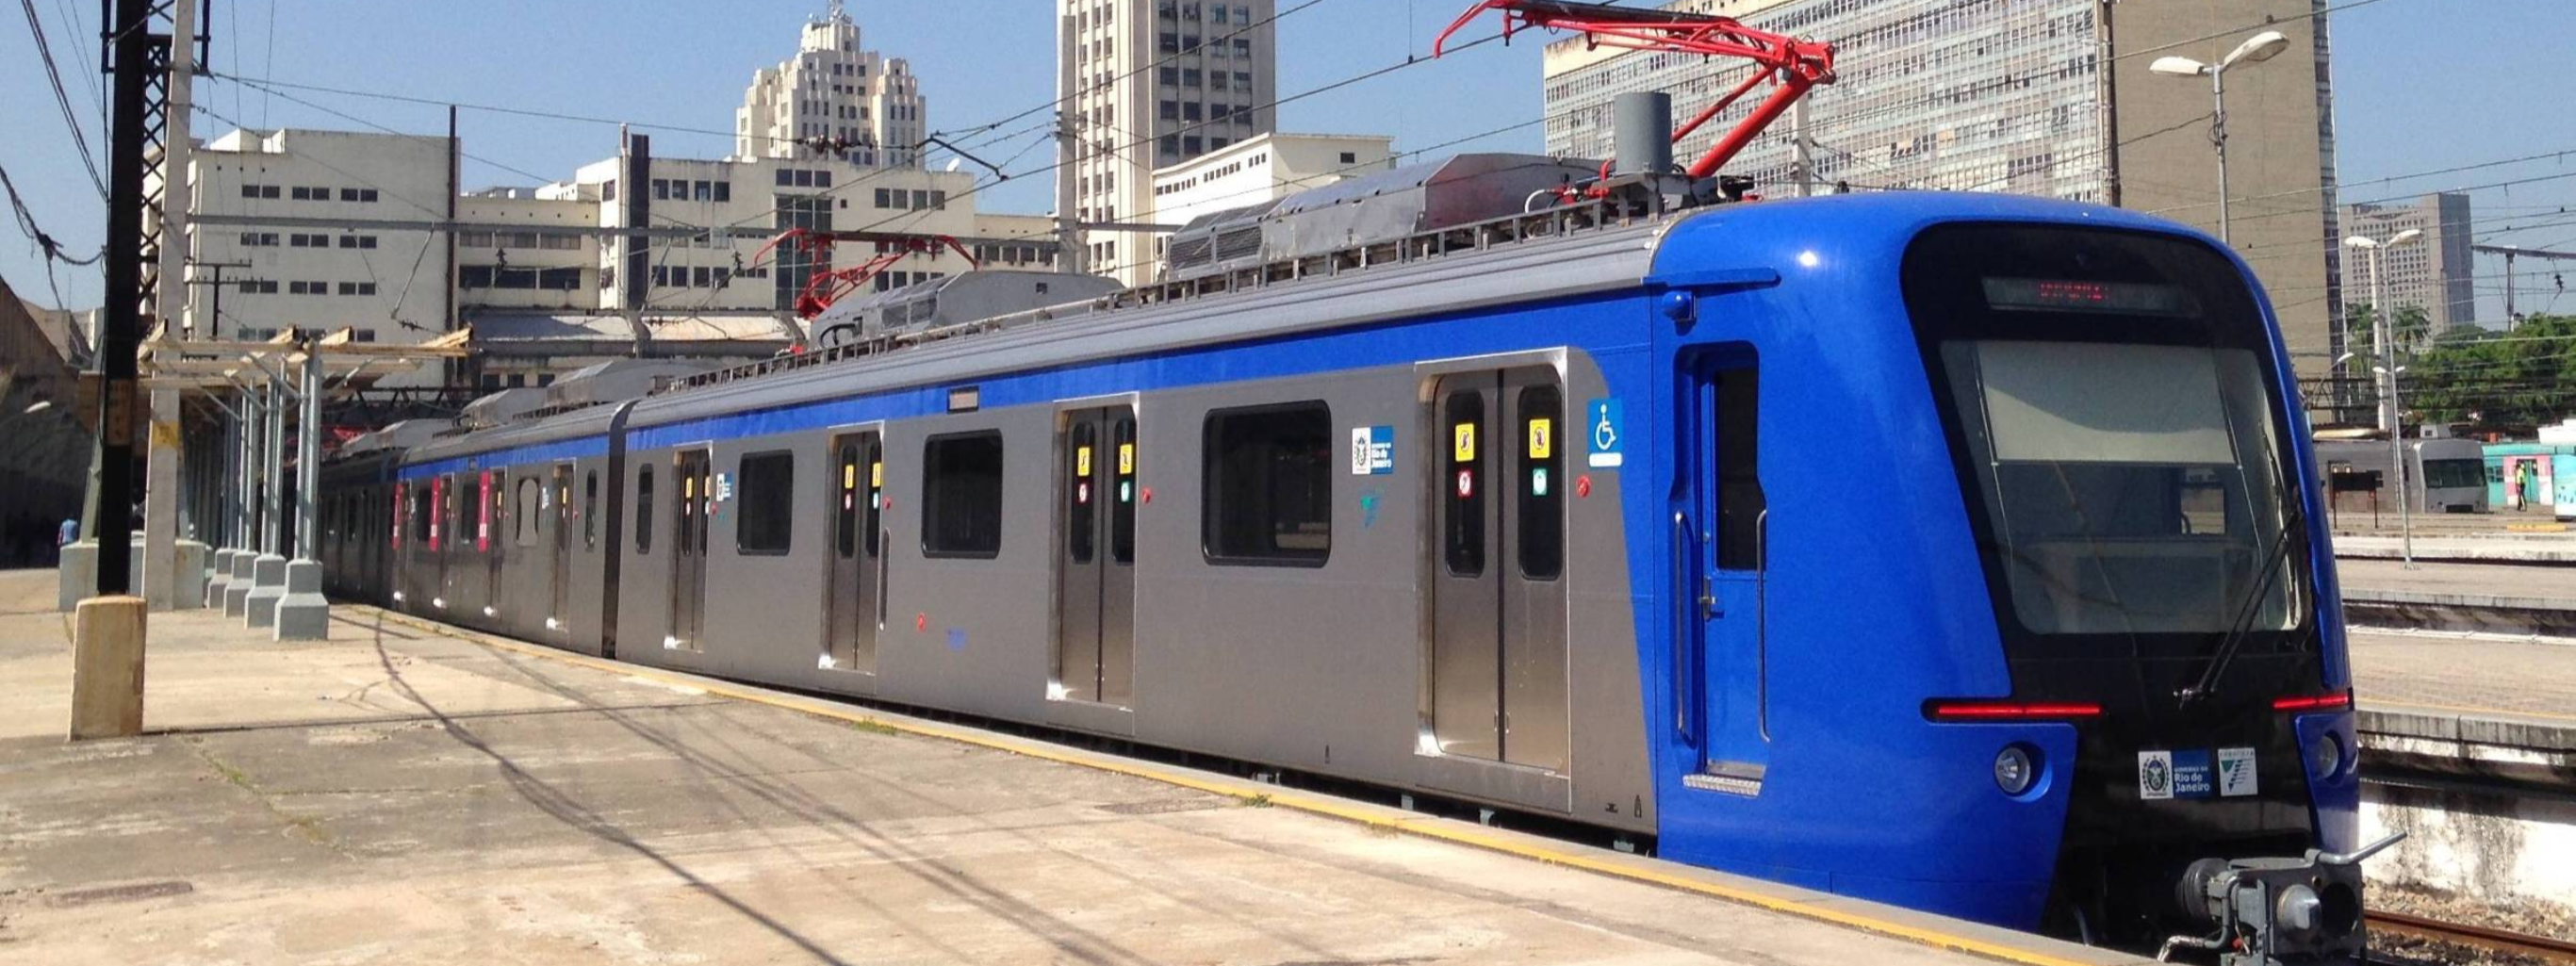 Agetransp aprova novos horários dos trens da Supervia: já estão em vigor